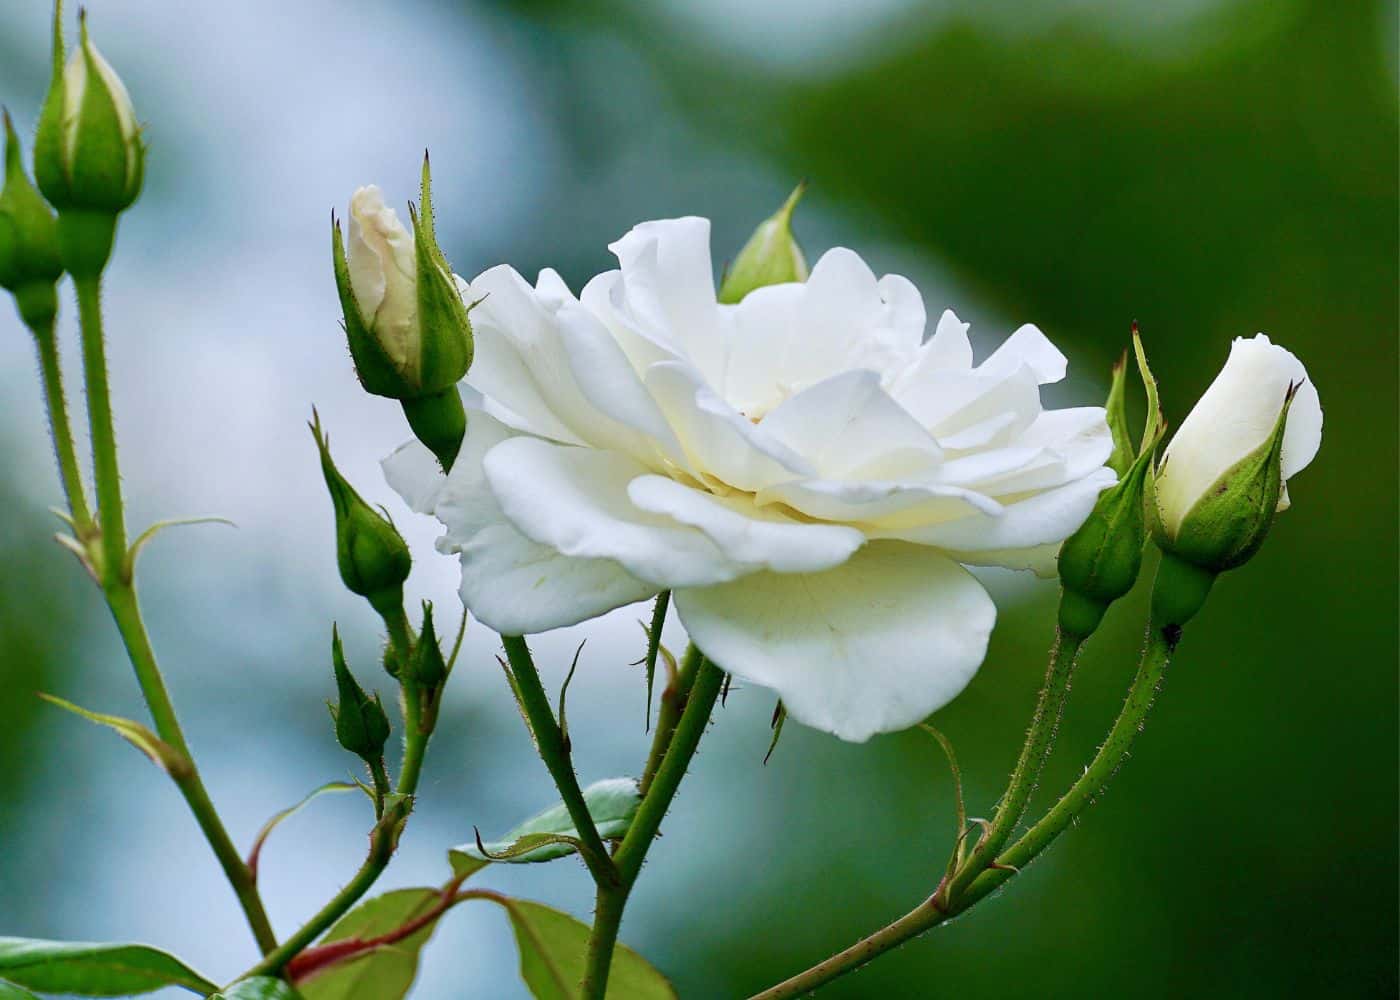 White drift rose